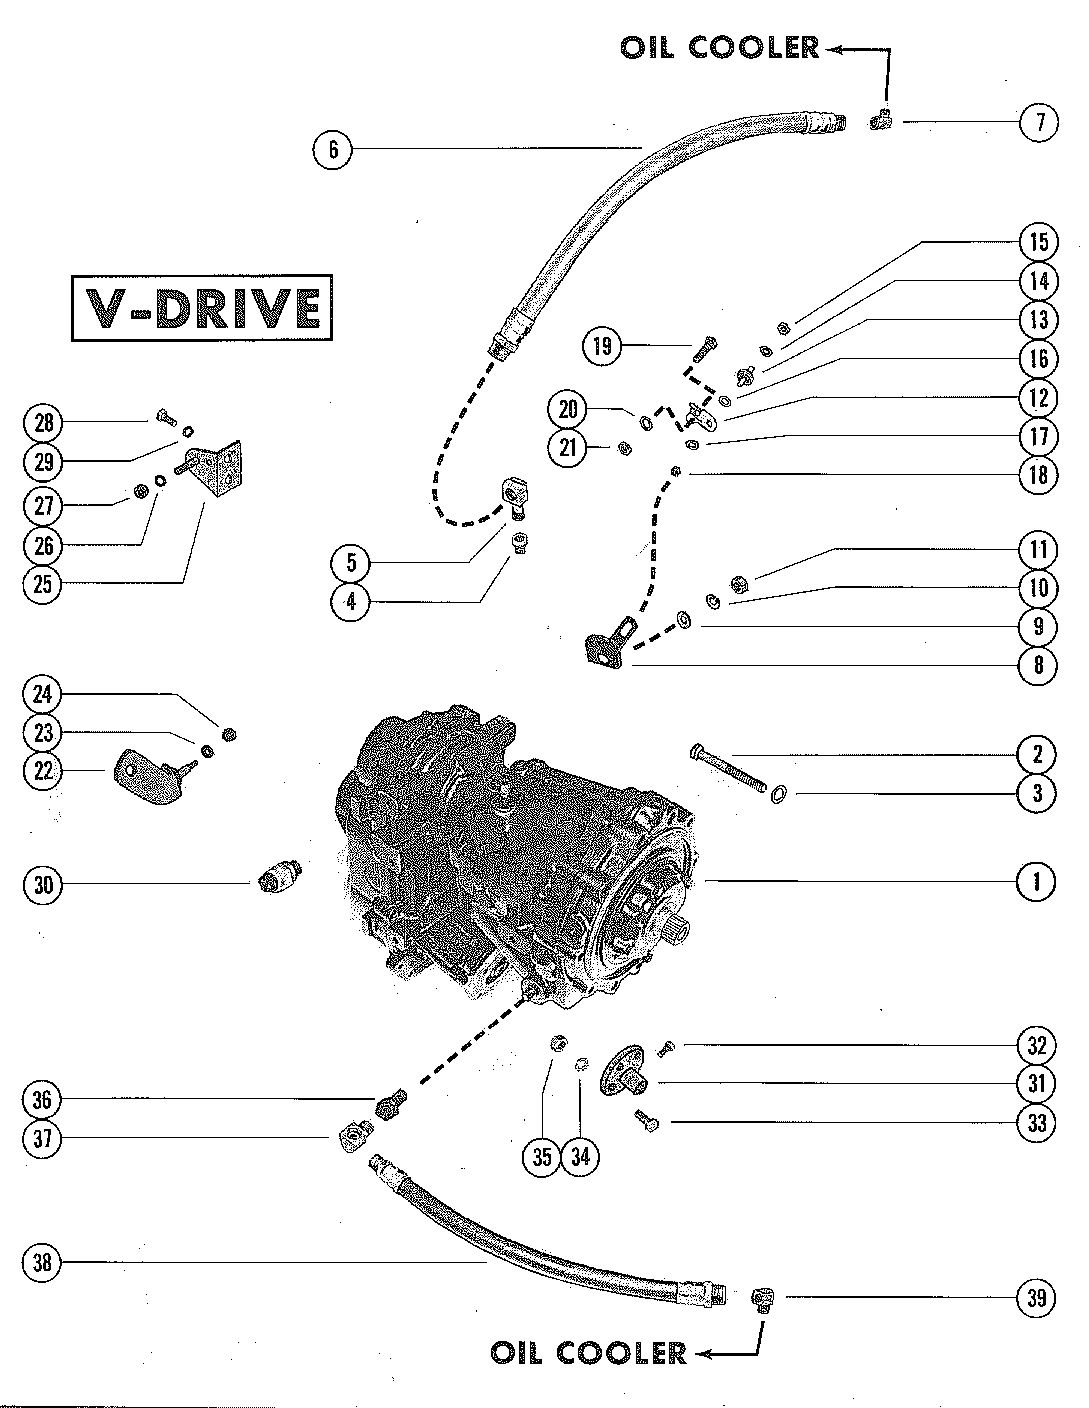 MERCRUISER 325 ENGINE TRANSMISSION ASSEMBLY (V-DRIVE)